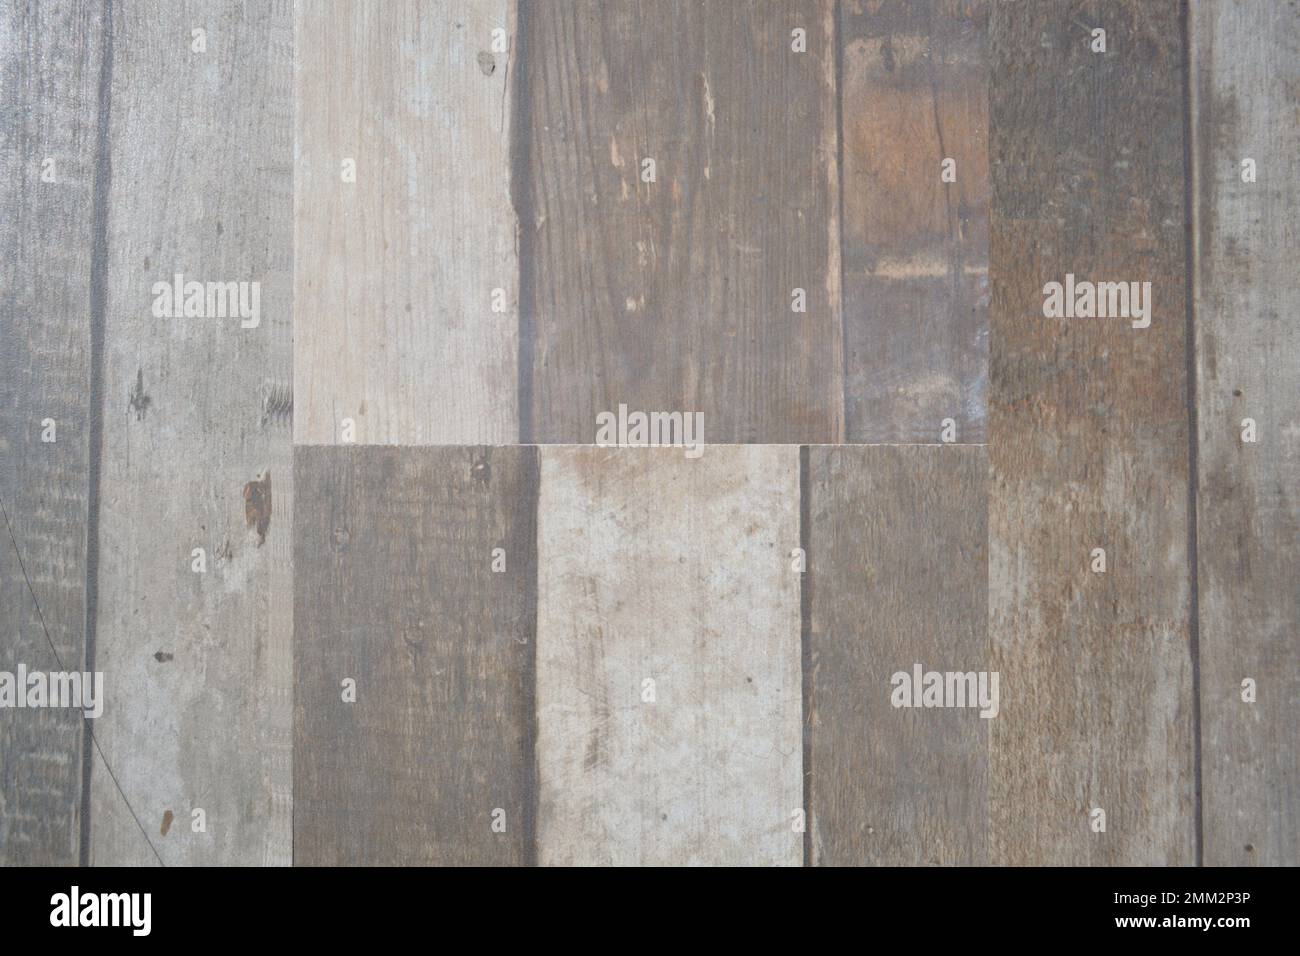 Arrière-plan abstrait en bois lavé fait d'anciennes pièces de planche collées ensemble pour former une table, un plancher ou un revêtement mural. Texture du bois, motif. Banque D'Images